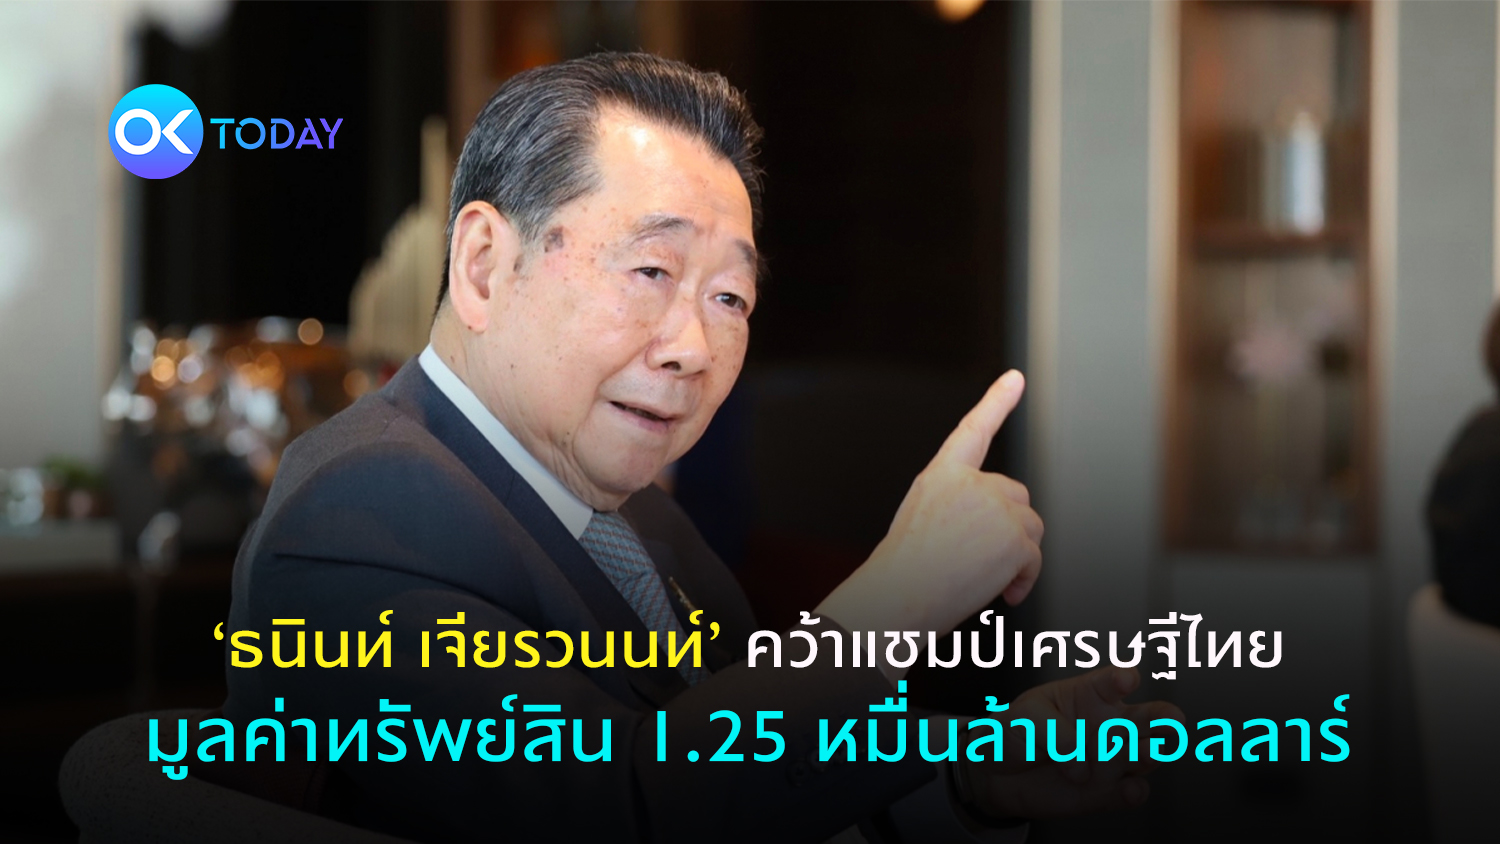 ‘ธนินท์ เจียรวนนท์’ คว้าแชมป์เศรษฐีไทย มูลค่าทรัพย์สิน 1.25 หมื่นล้านดอลลาร์